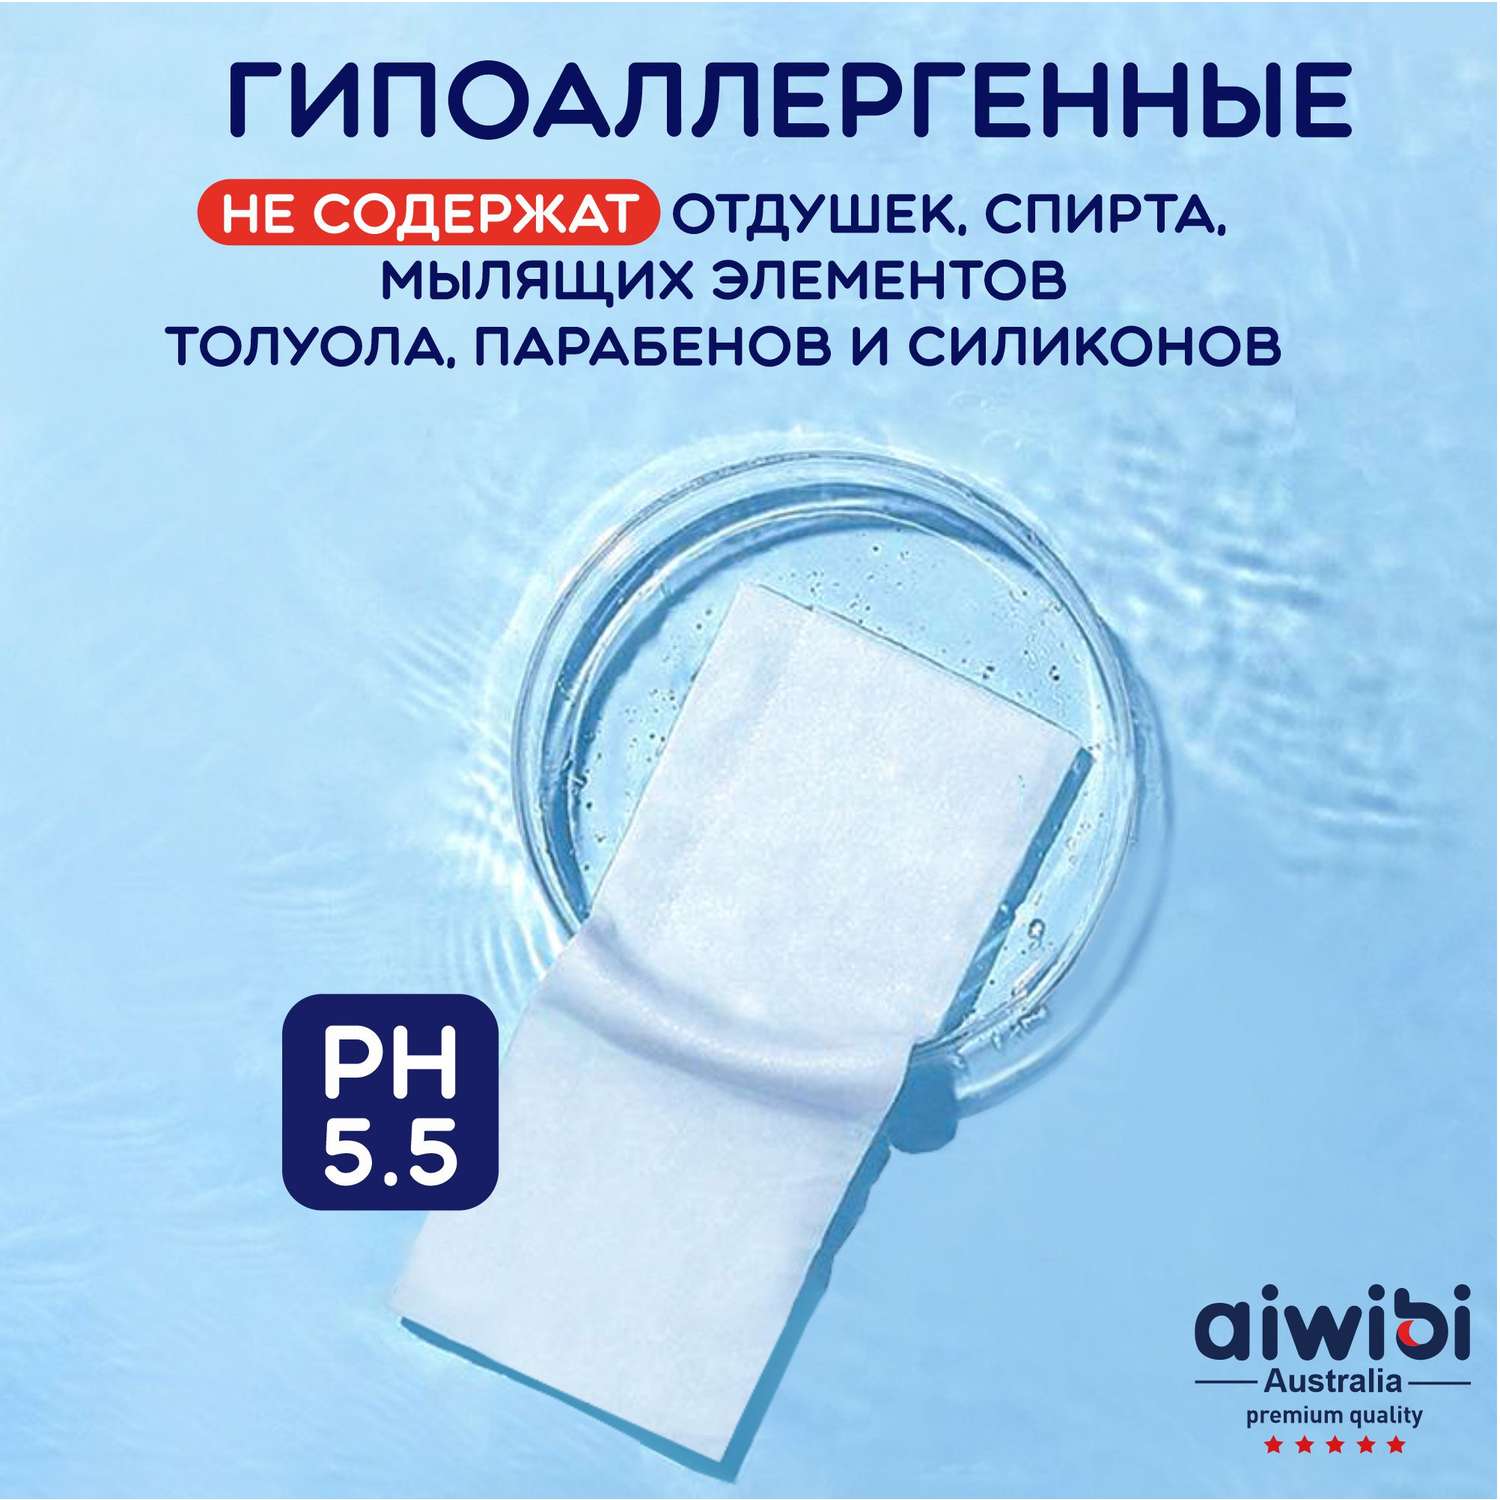 Влажные салфетки AIWIBI премиум-класса 3 упаковки по 80 шт - фото 5